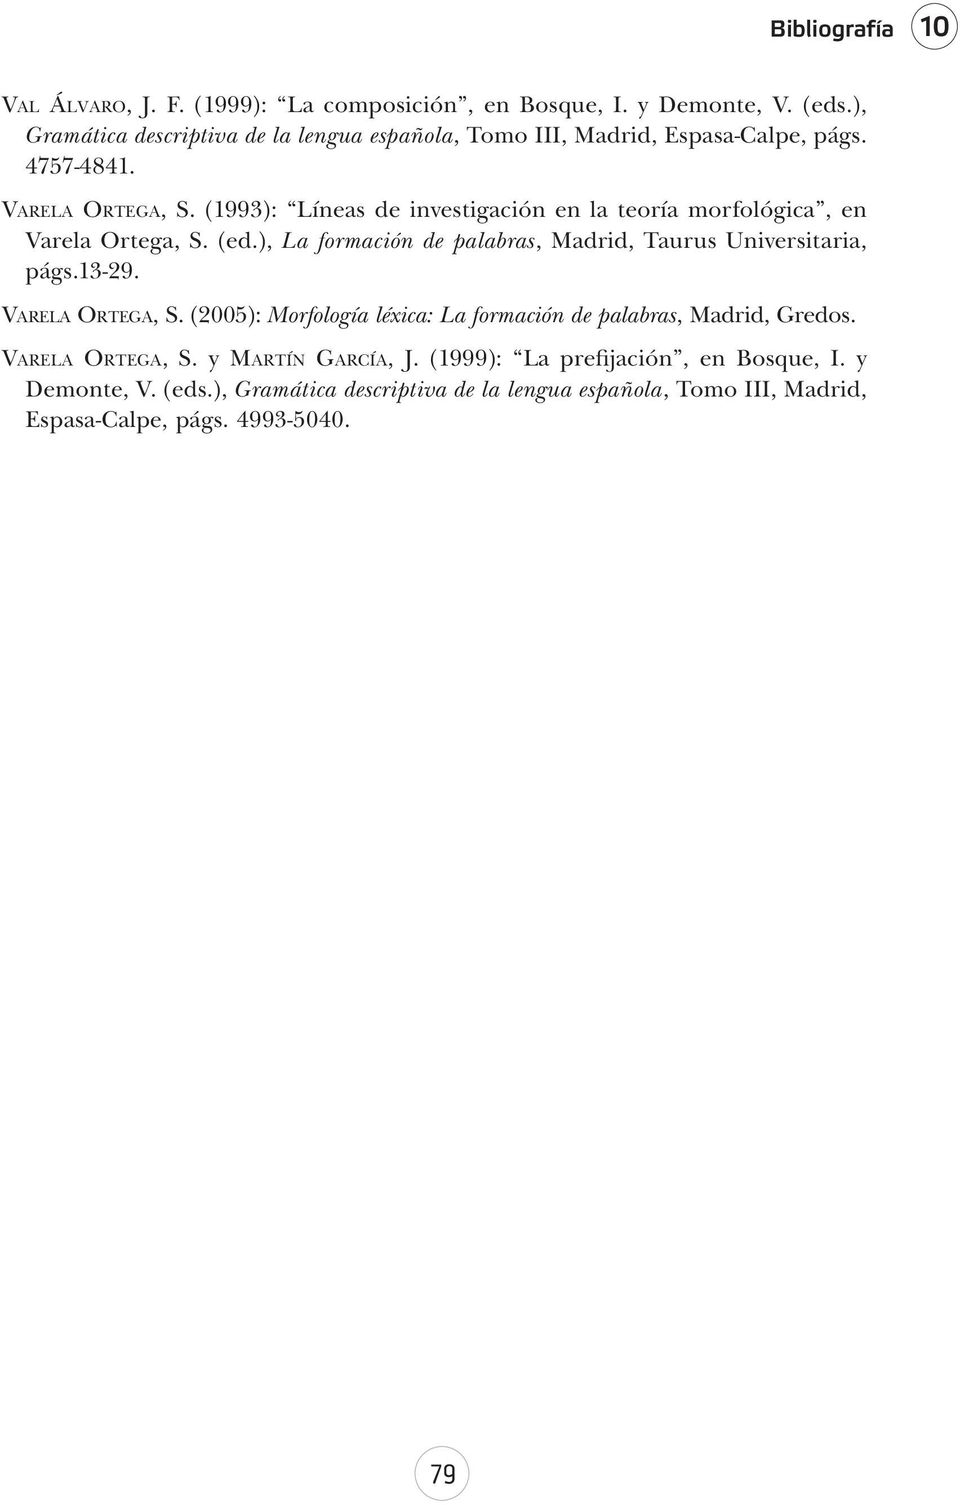 (1993): Líneas de investigación en la teoría morfológica, en Varela Ortega, S. (ed.), La formación de palabras, Madrid, Taurus Universitaria, págs.13-29.